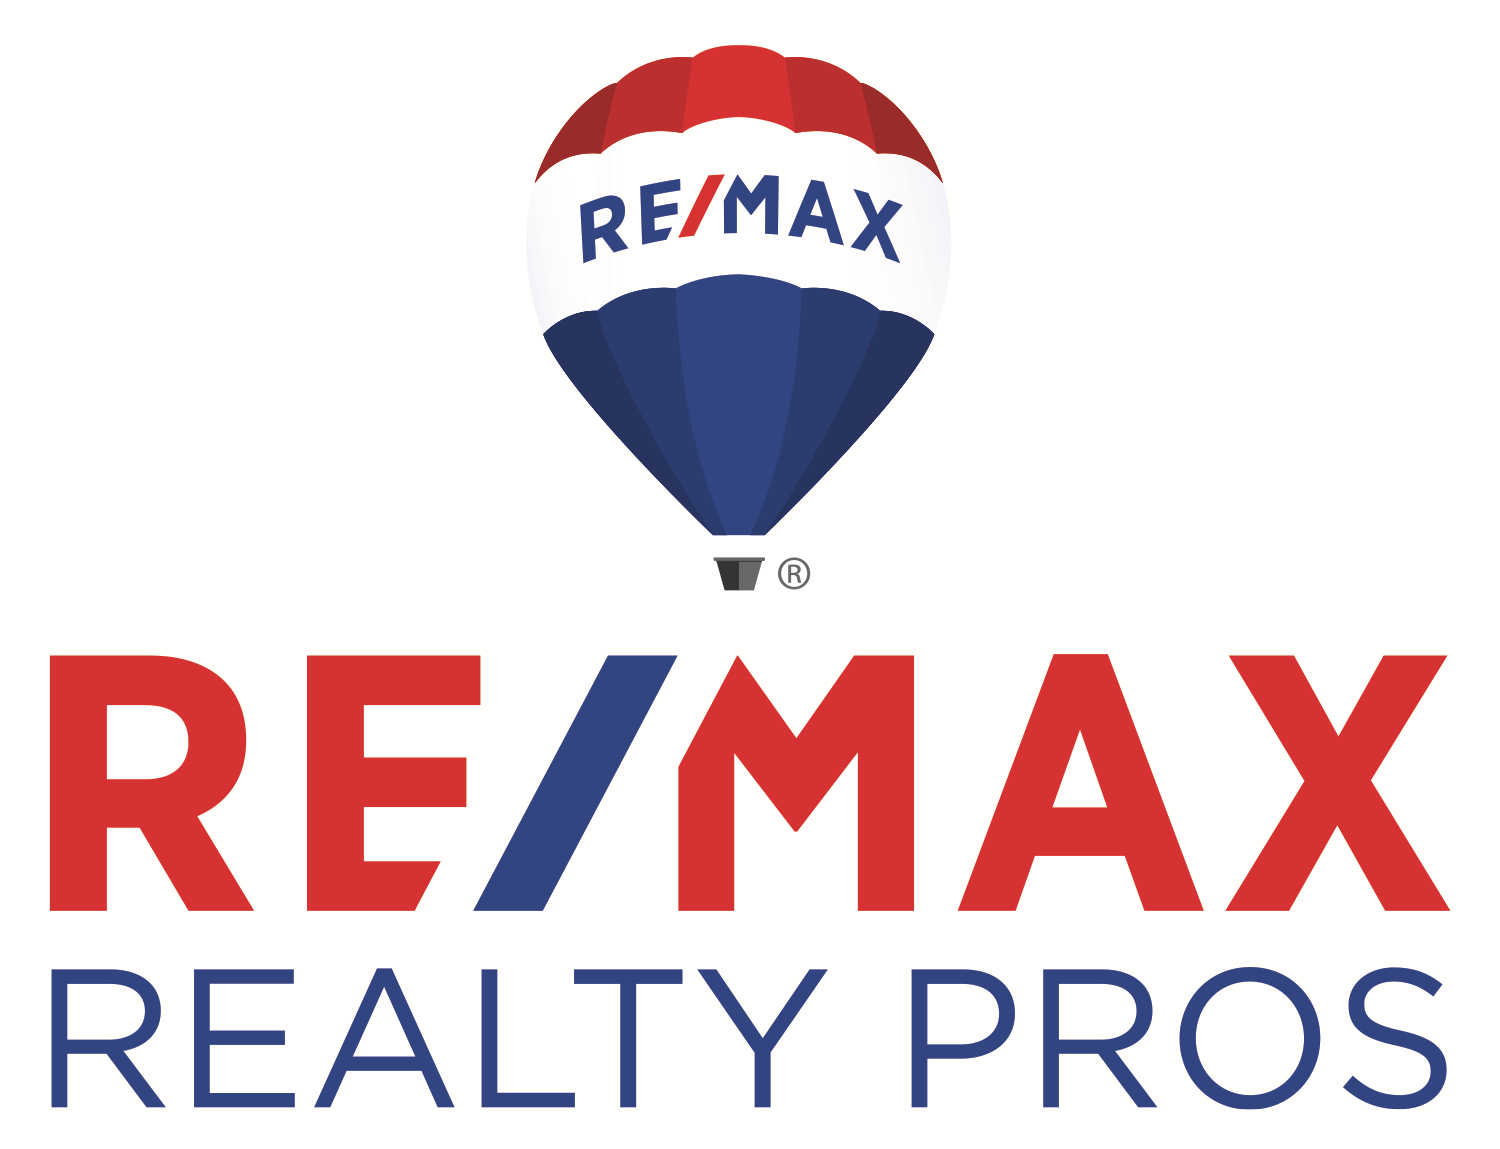 RE/MAX Realty Pros Company Logo